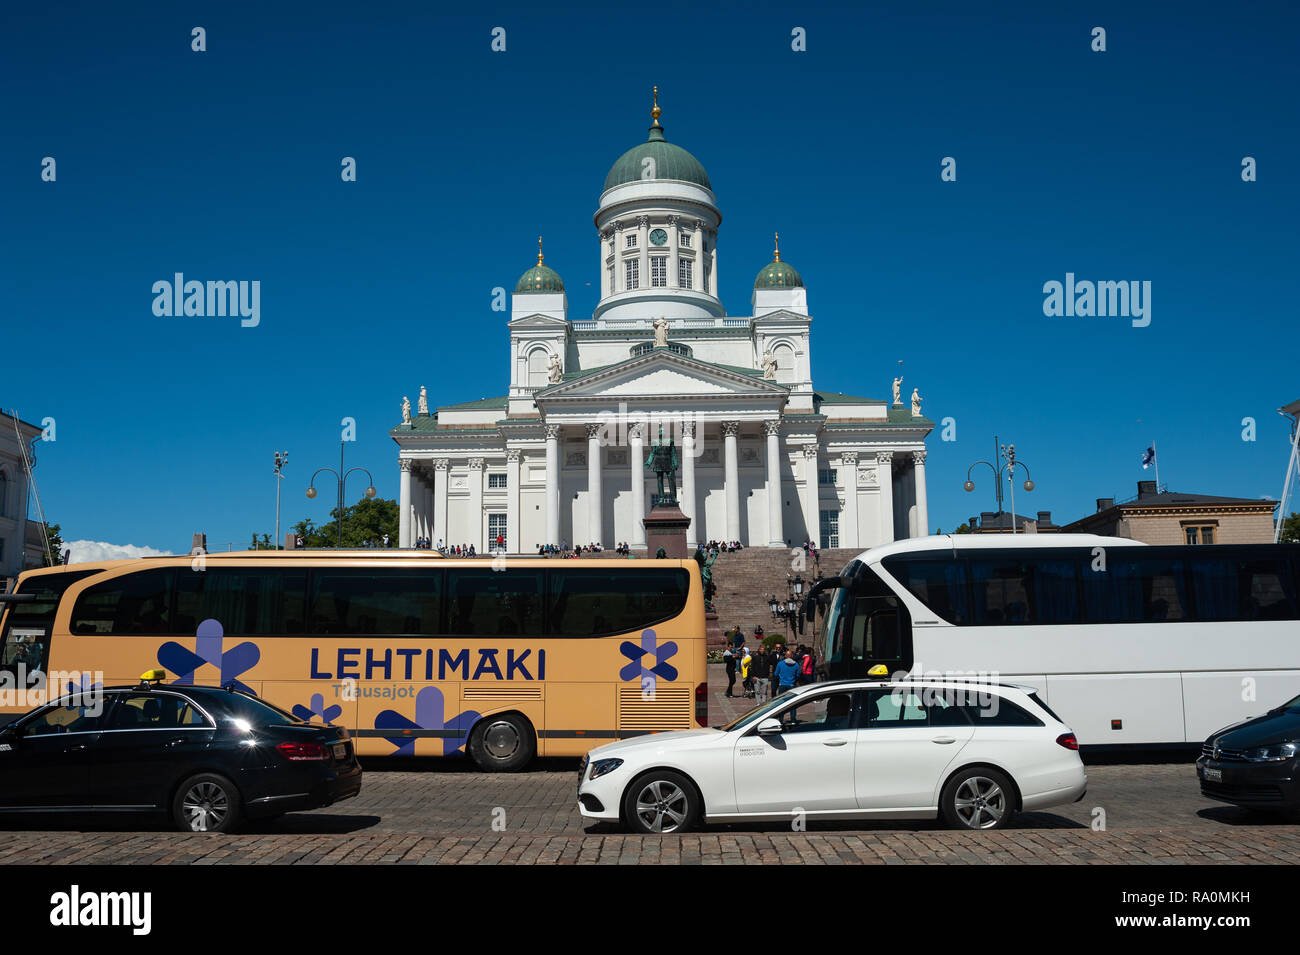 23.06.2018 - Helsinki, Finlande - Europa, die am Senatsplatz Domkirche, auch bekannt als Weisse Kathedrale oder Helsingin Tuomiokirkko. 0SL180623D014C Banque D'Images